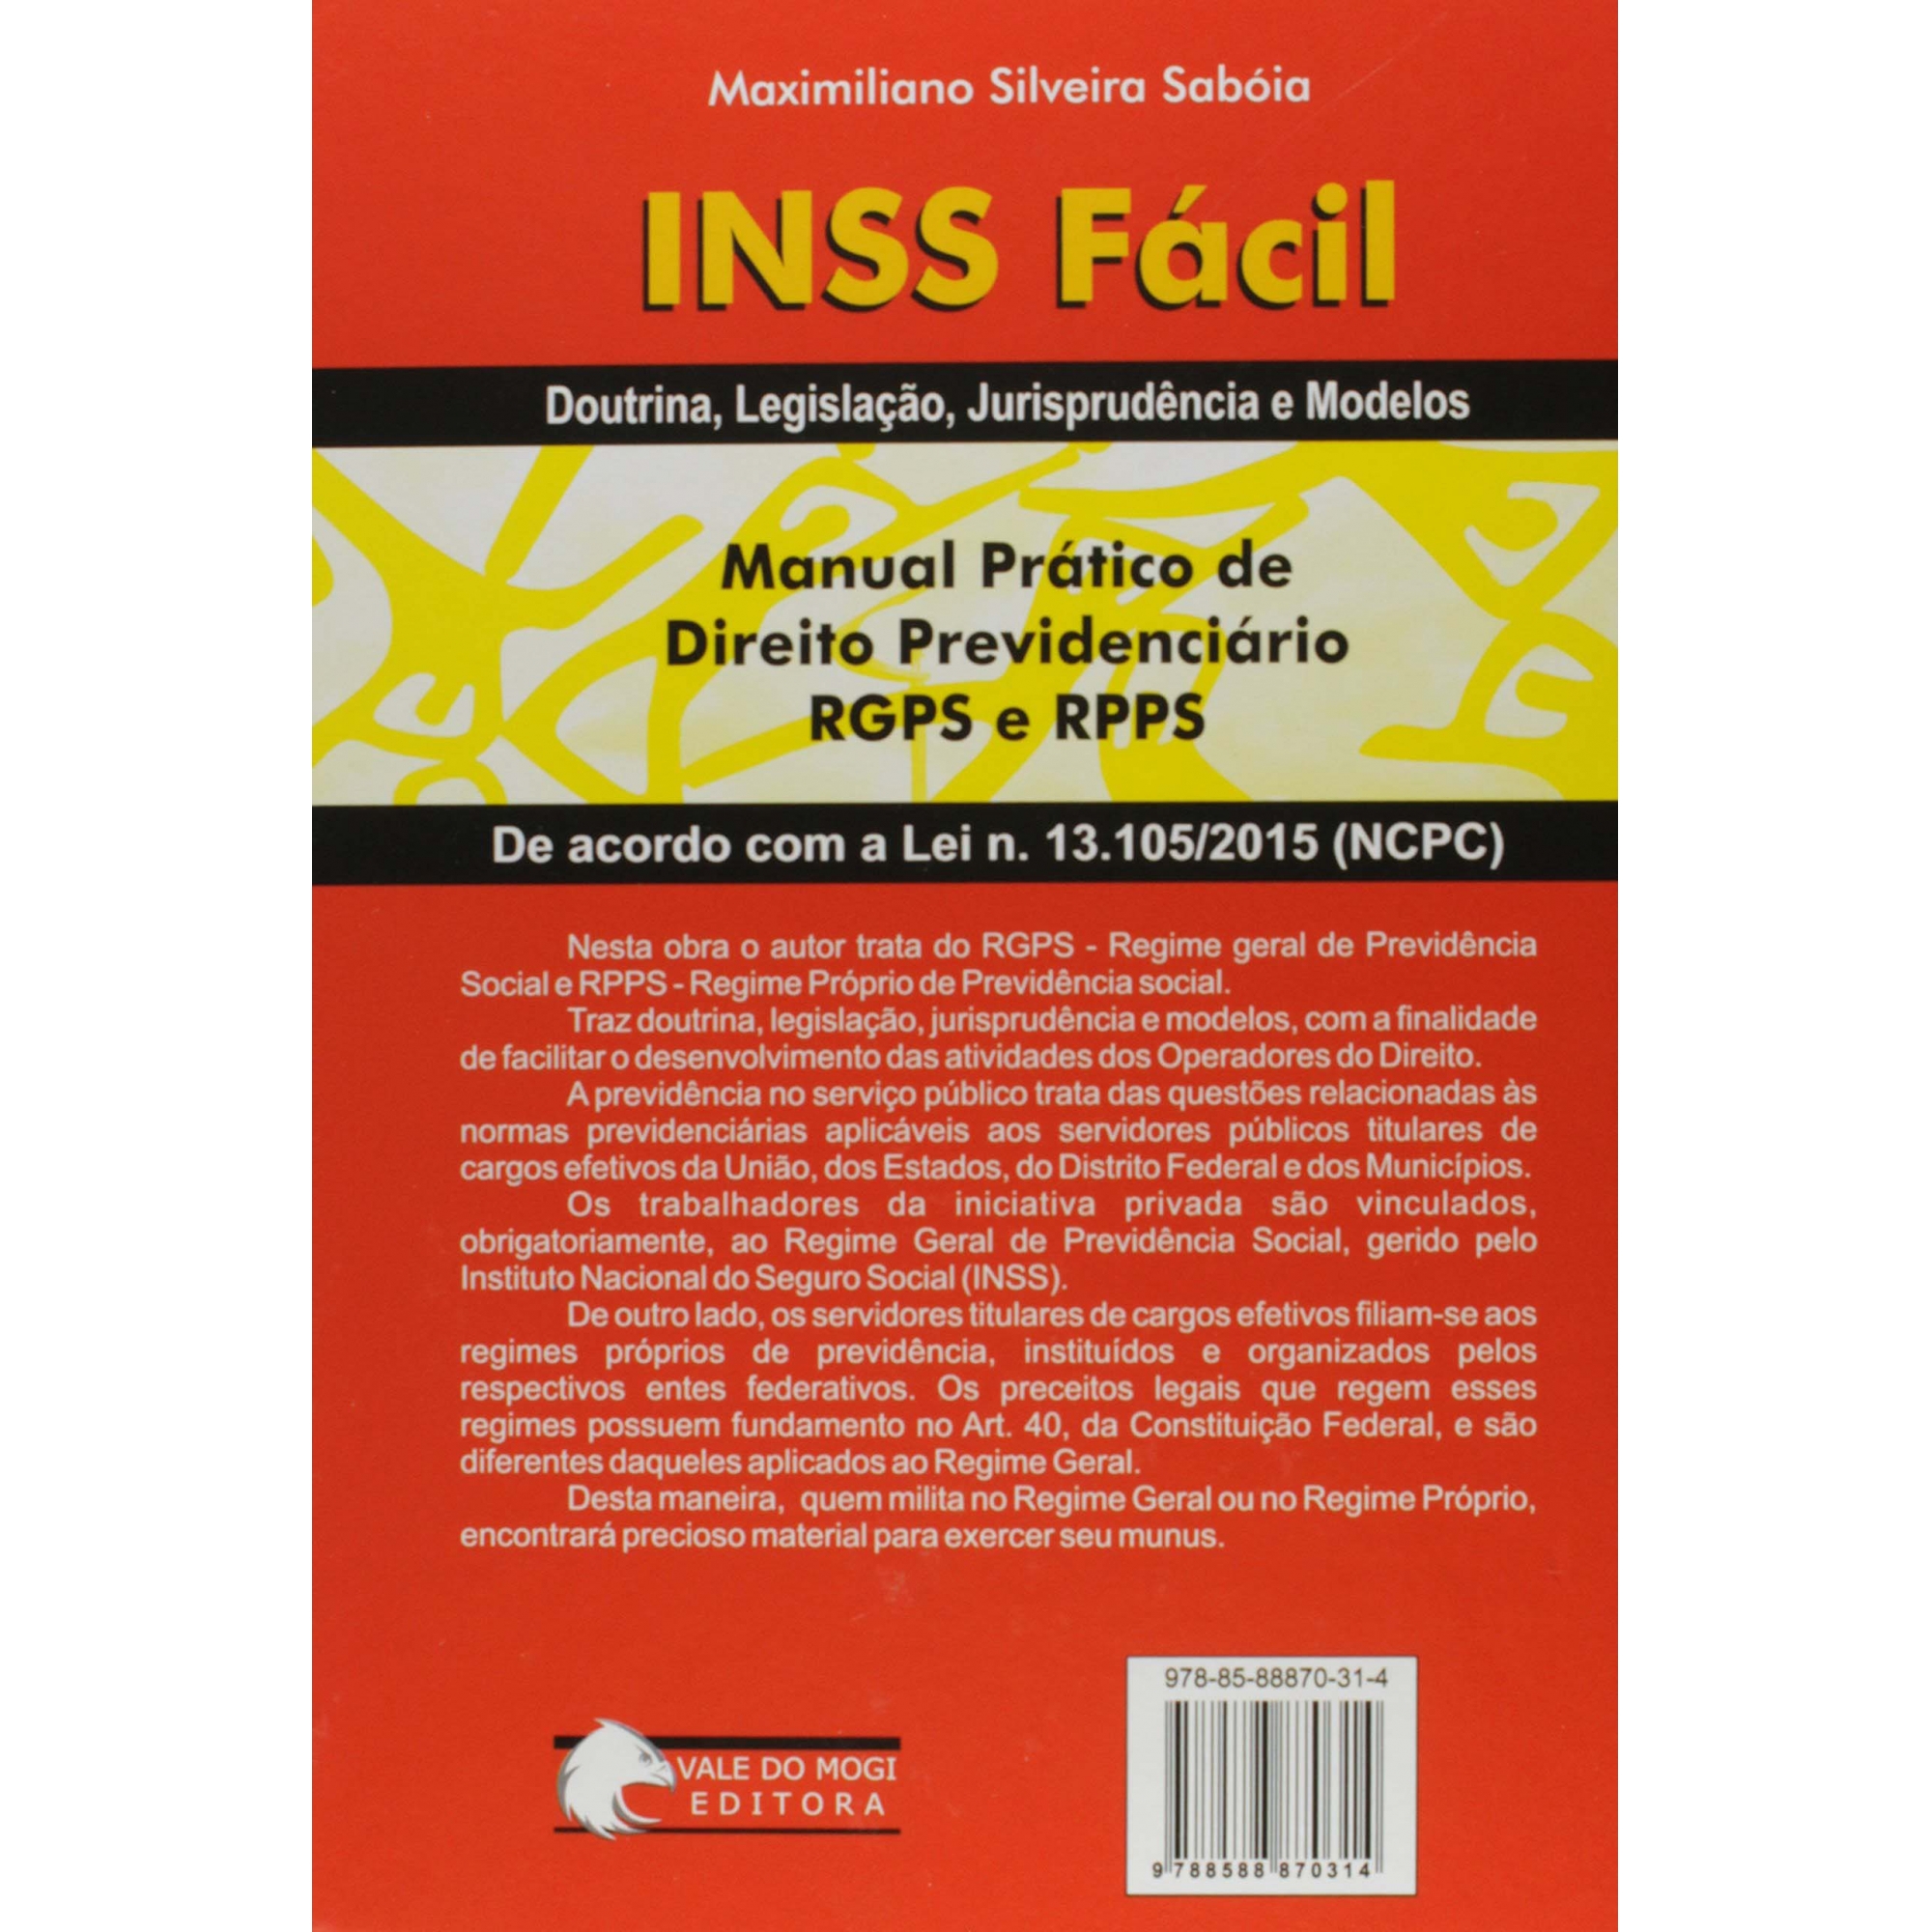 Livro Manual INSS Fácil Prático de Direito Previdenciário